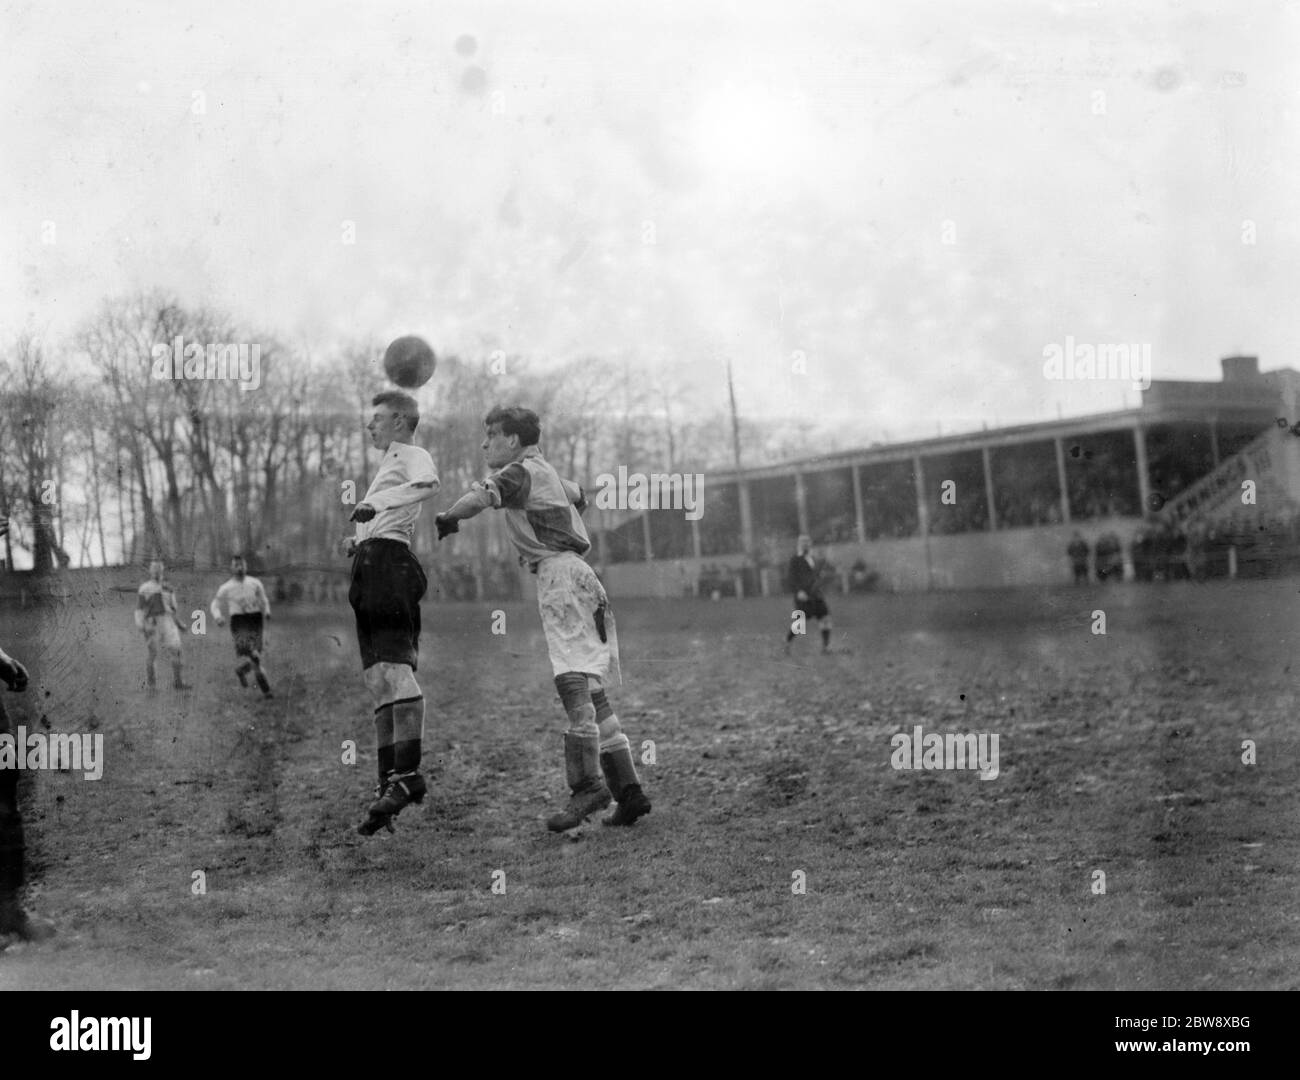 Bexleyheath & Welling vs. Erith y Belvedere - Kent League - 06/03/37 compitiendo por la pelota en el aire. 1937 Foto de stock